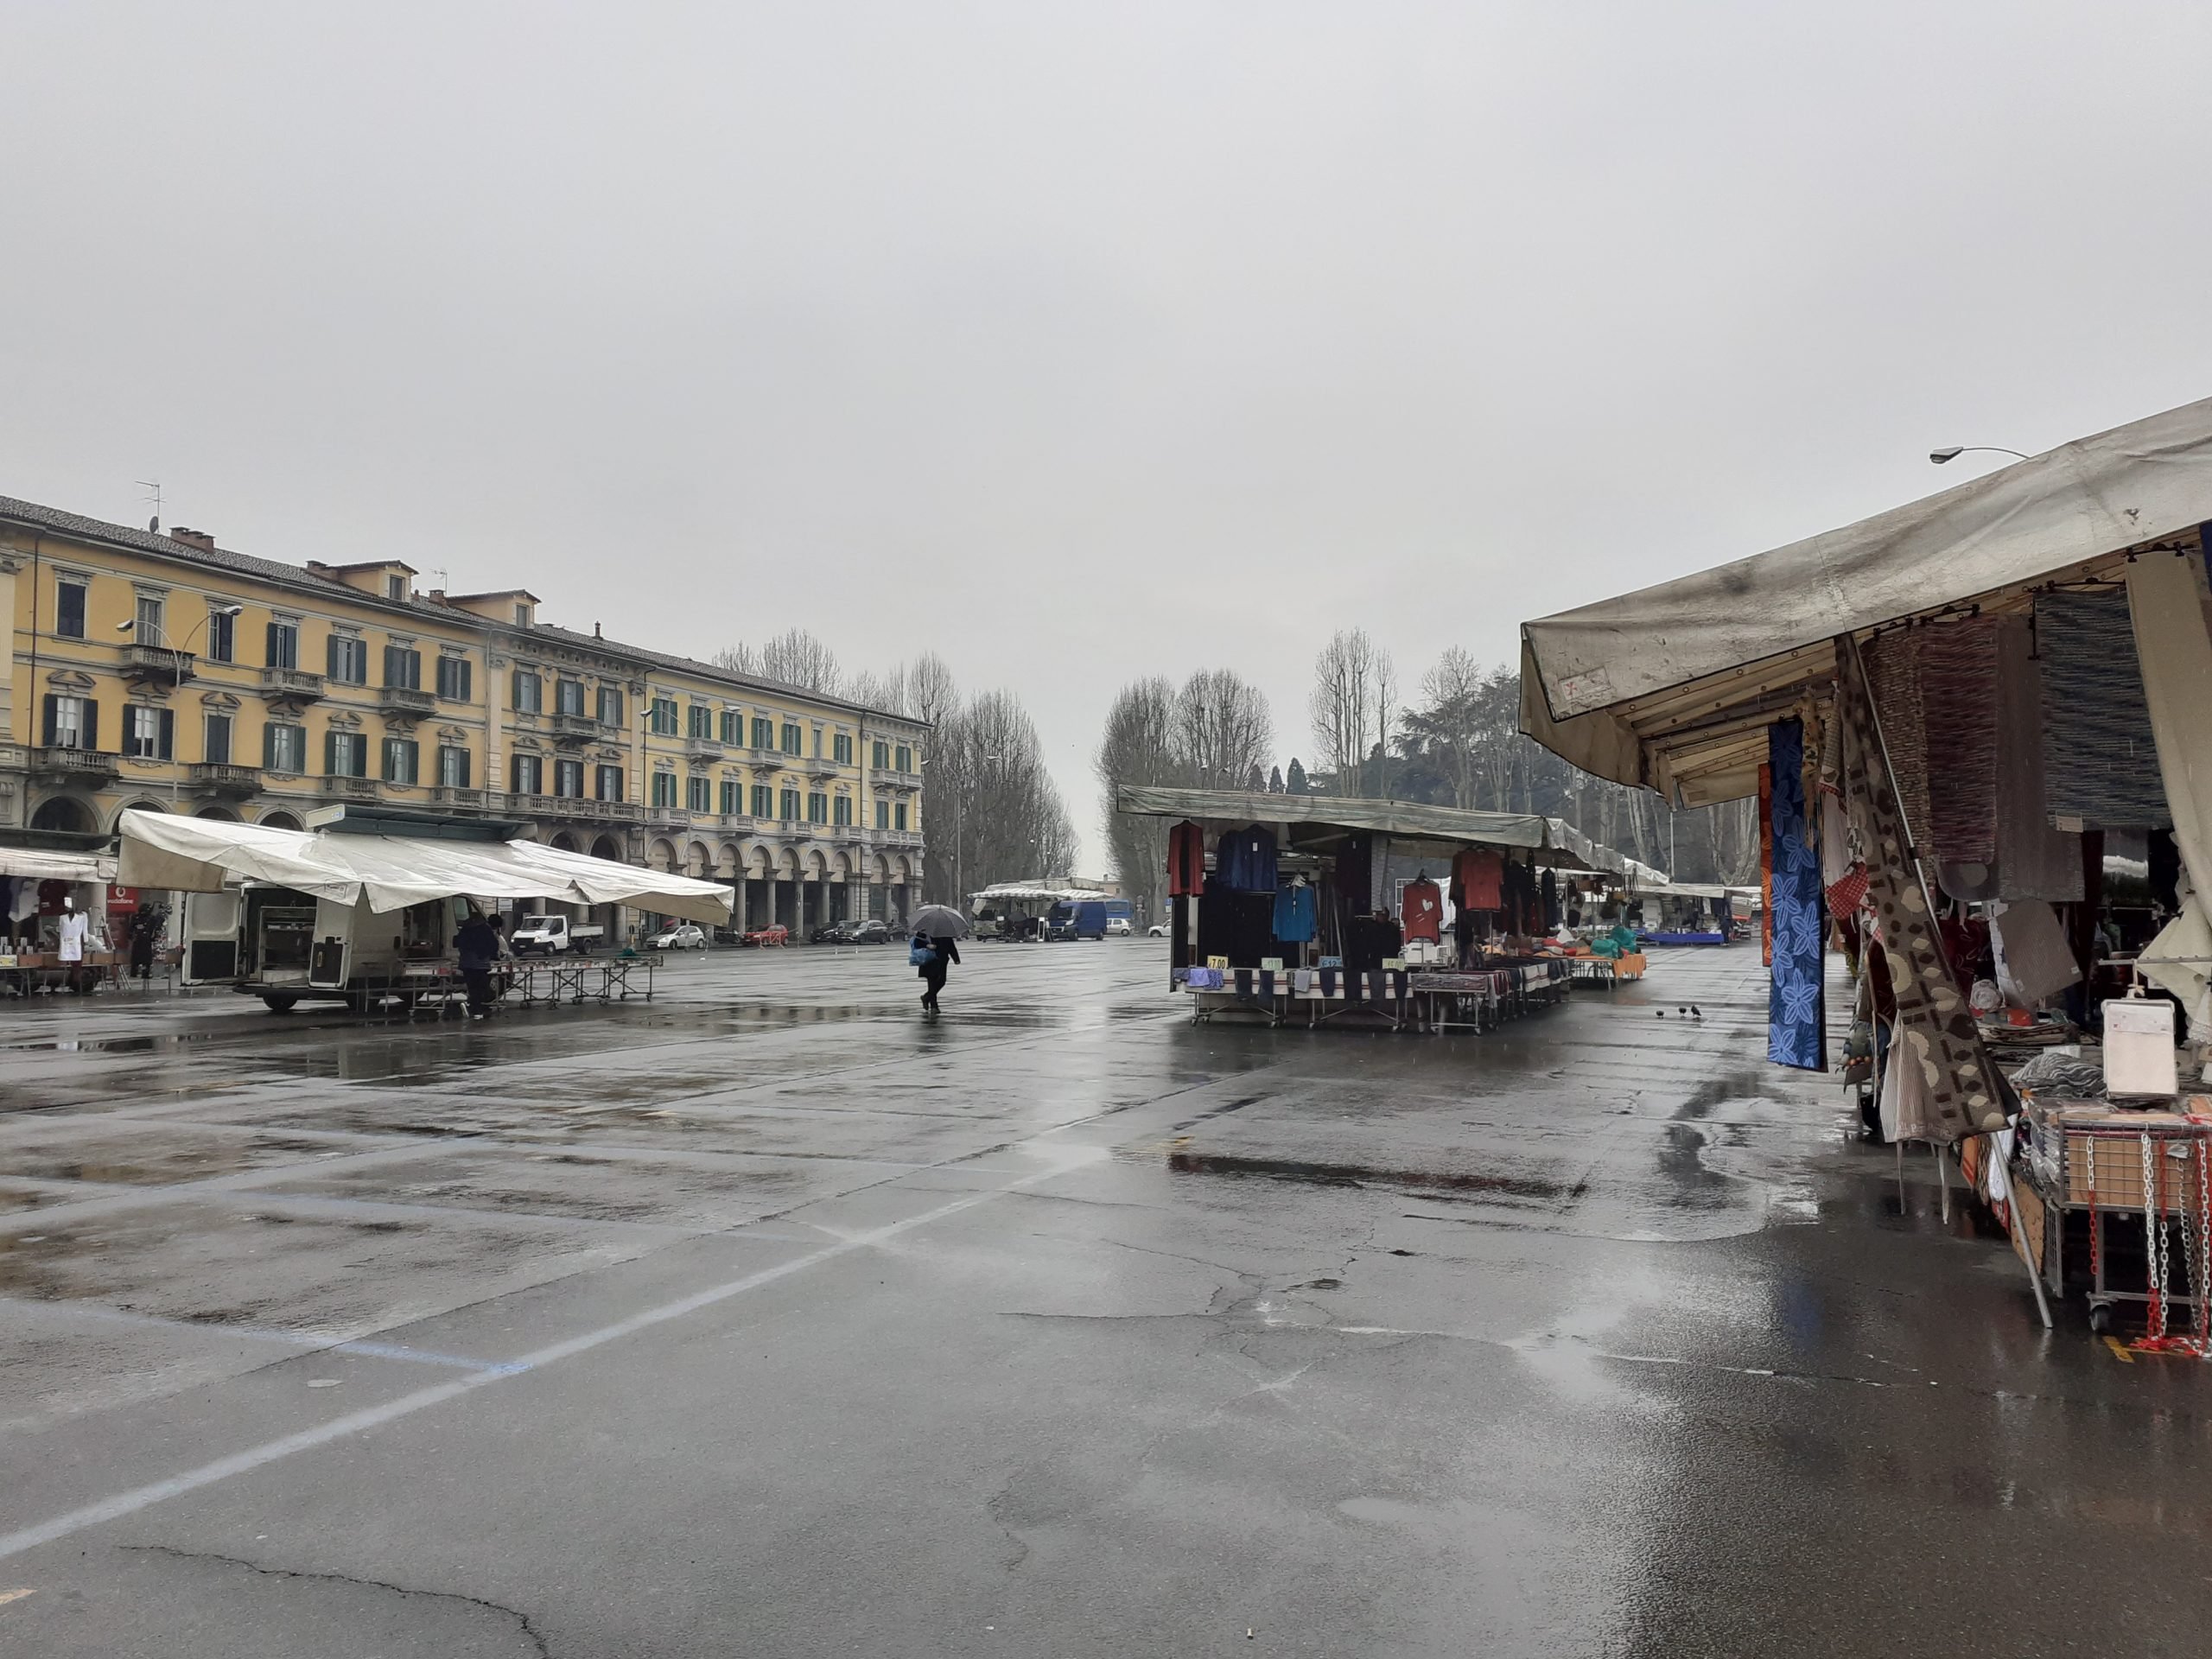 Regione Piemonte: “Verso un protocollo per far lavorare anche ambulanti extra alimentari”